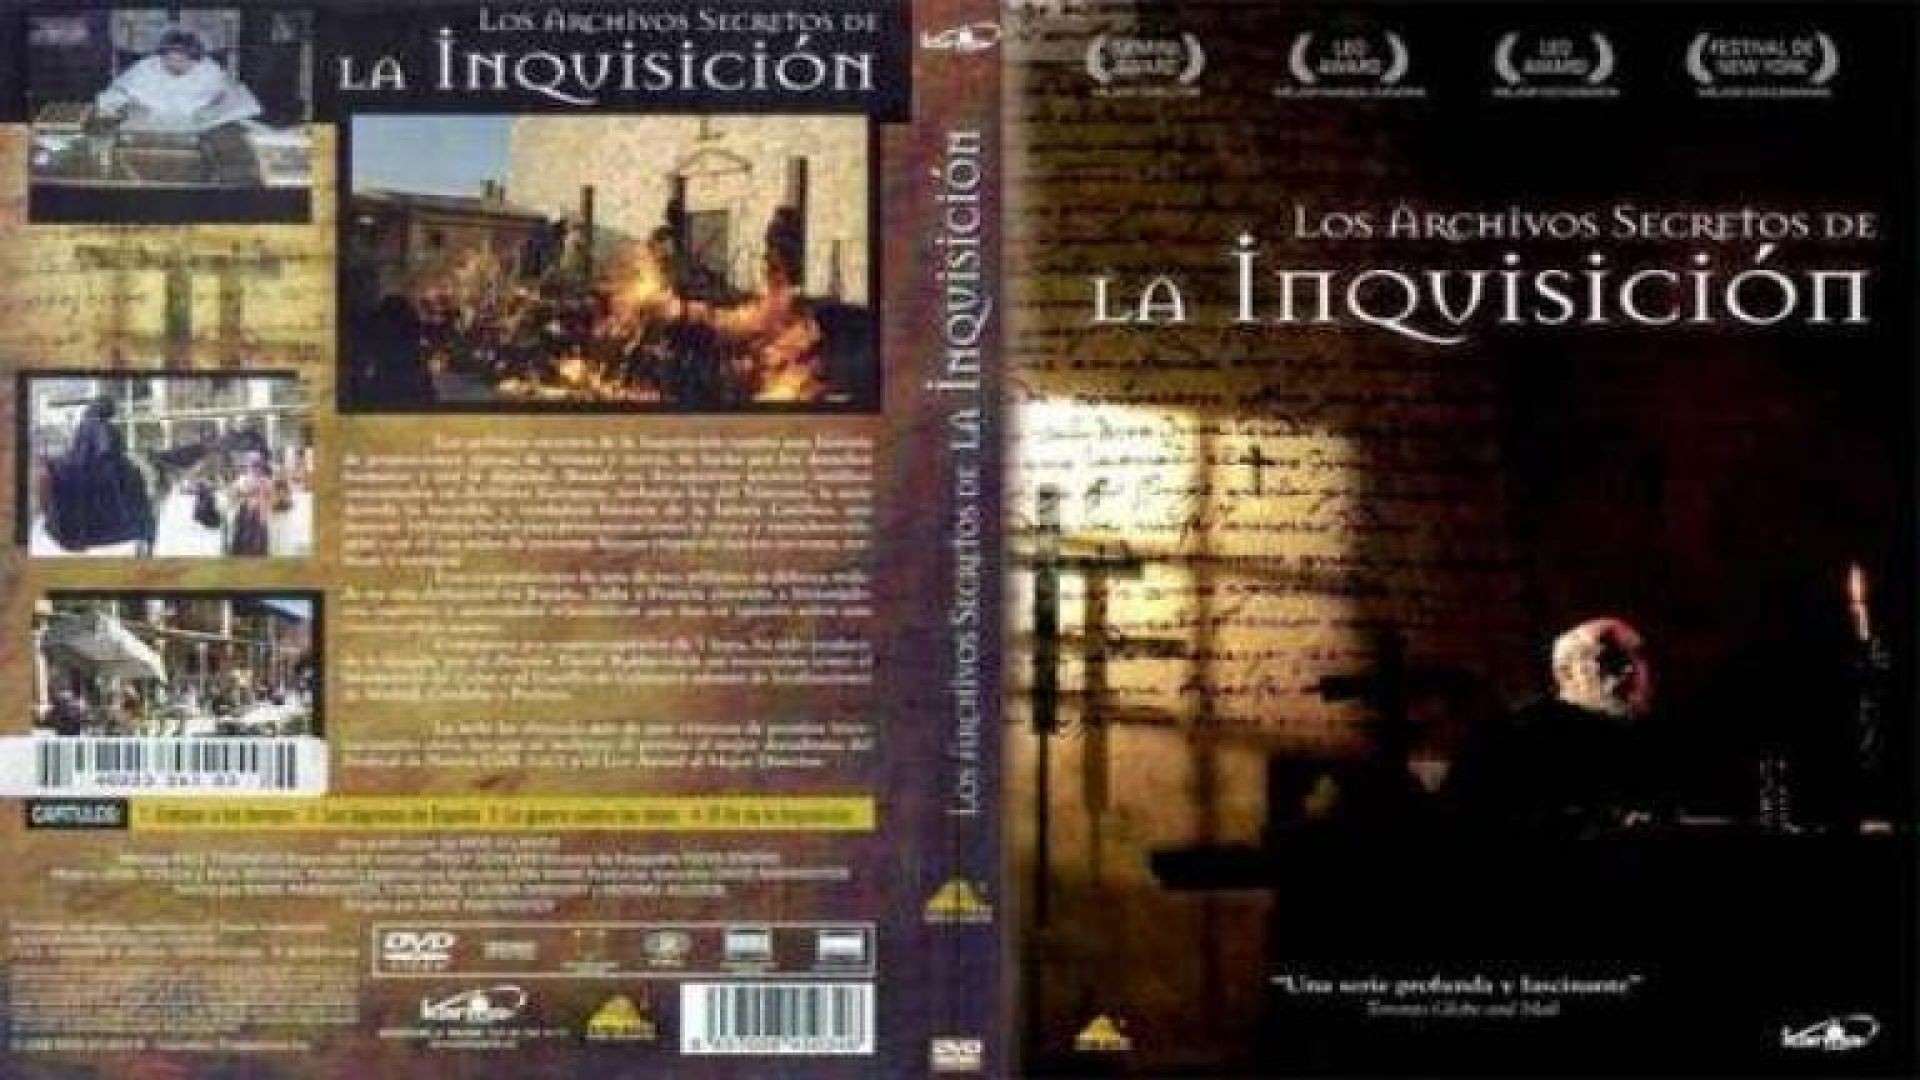 1/4 Los Archivos Secretos de la Inquisicion | Extirpar a los Herejes - Santa Inquisicion